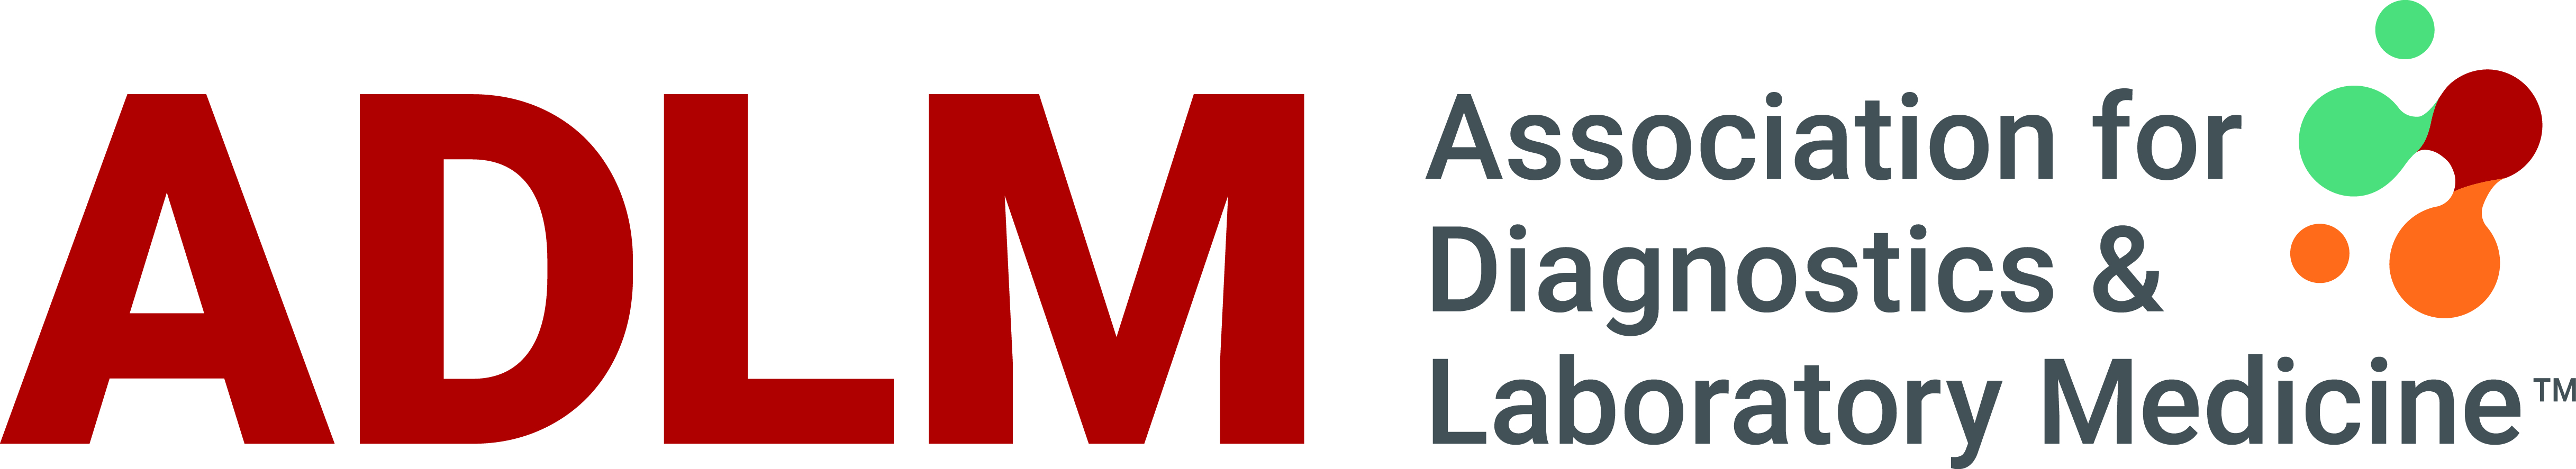 The Association for Diagnostics & Laboratory Medicine logo